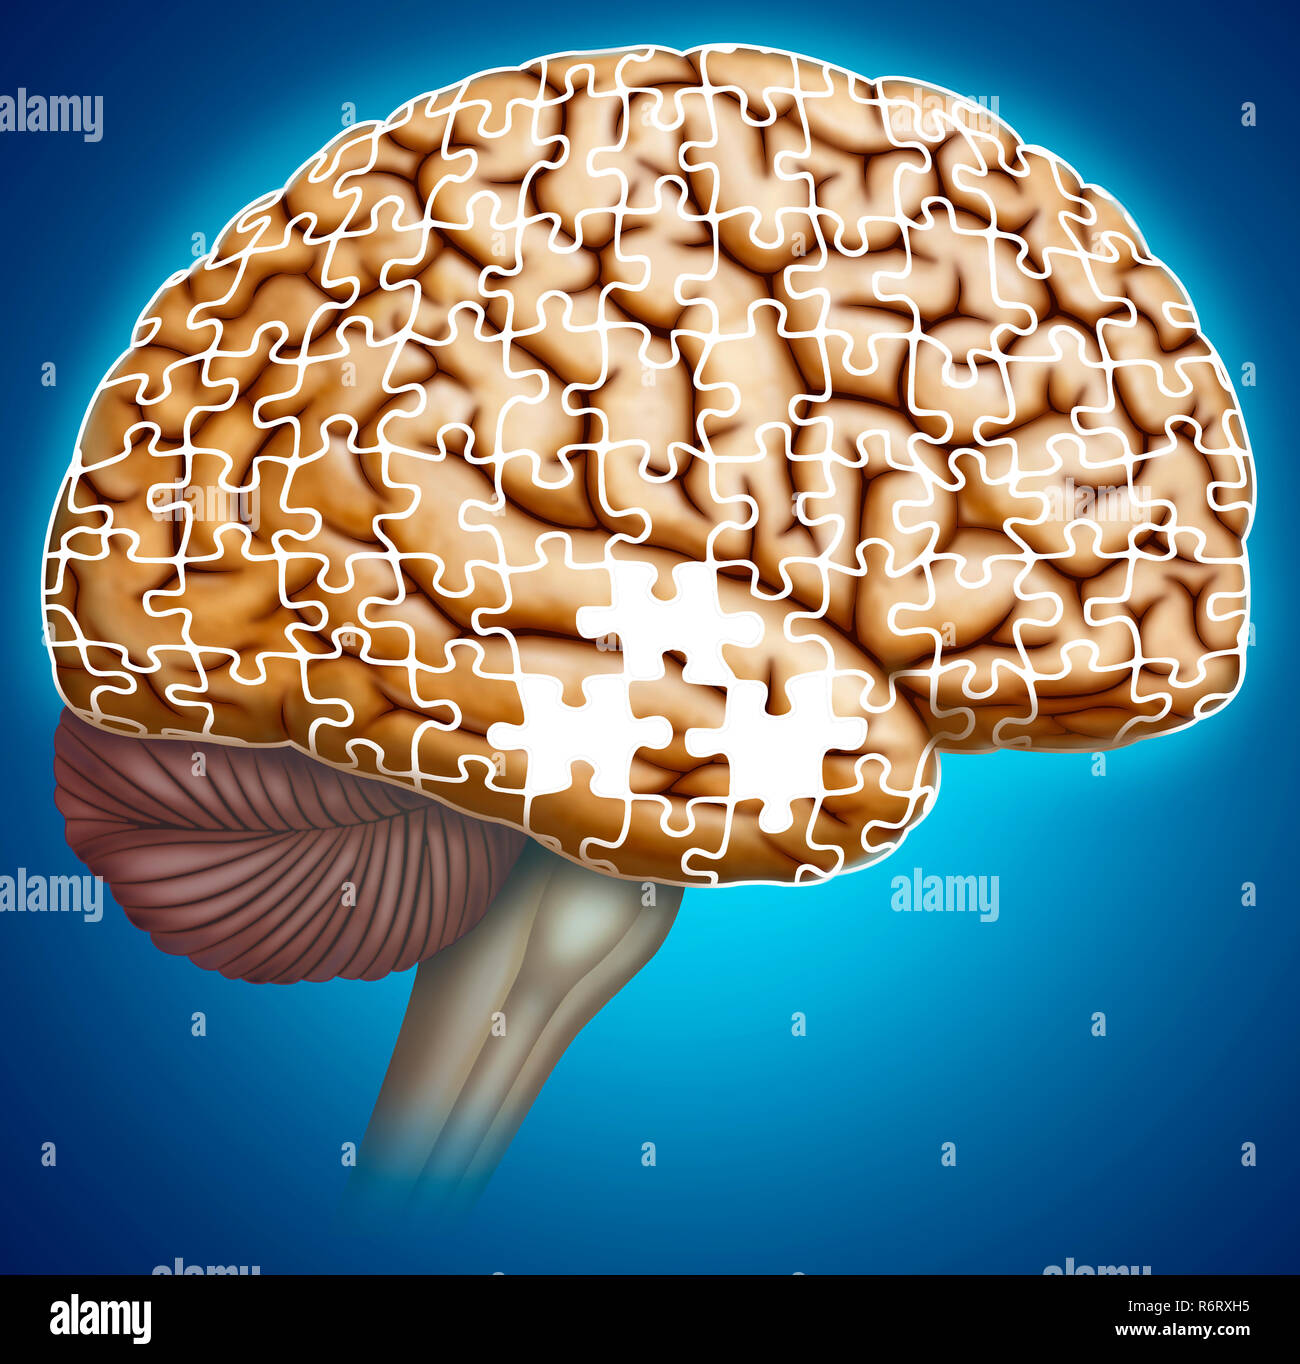 La perdita di memoria è un sintomo chiave del morbo di Alzheimer. I primi segni includono difficoltà a ricordare eventi o conversazioni recenti. Foto Stock